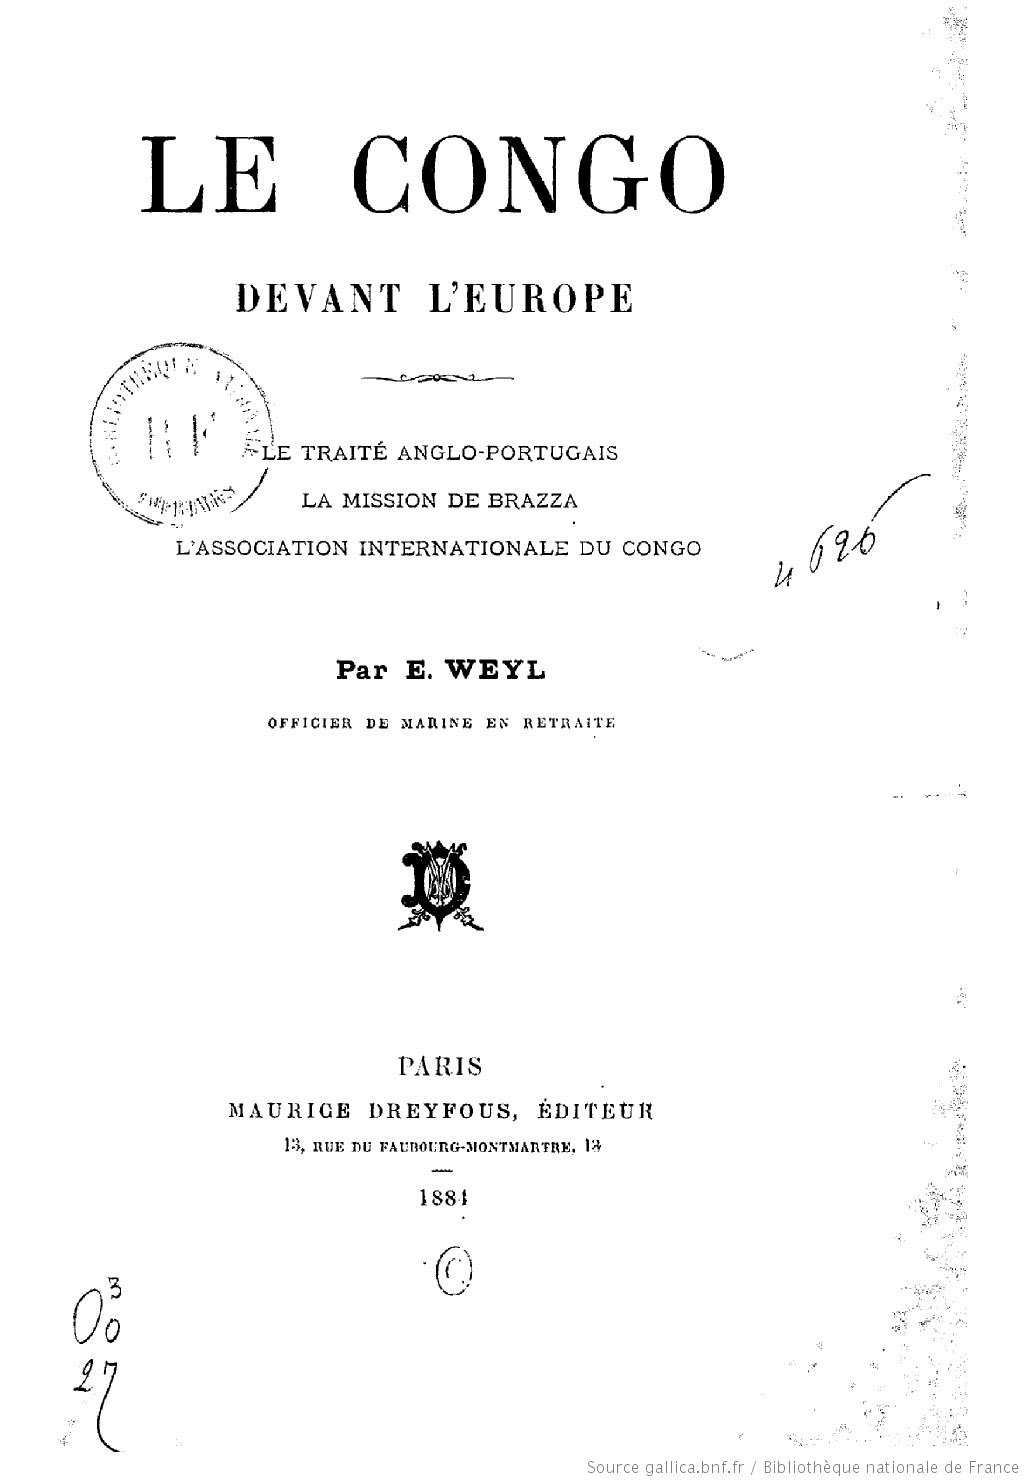 Le Congo devat l'Europe - Emile WEYL (1884)